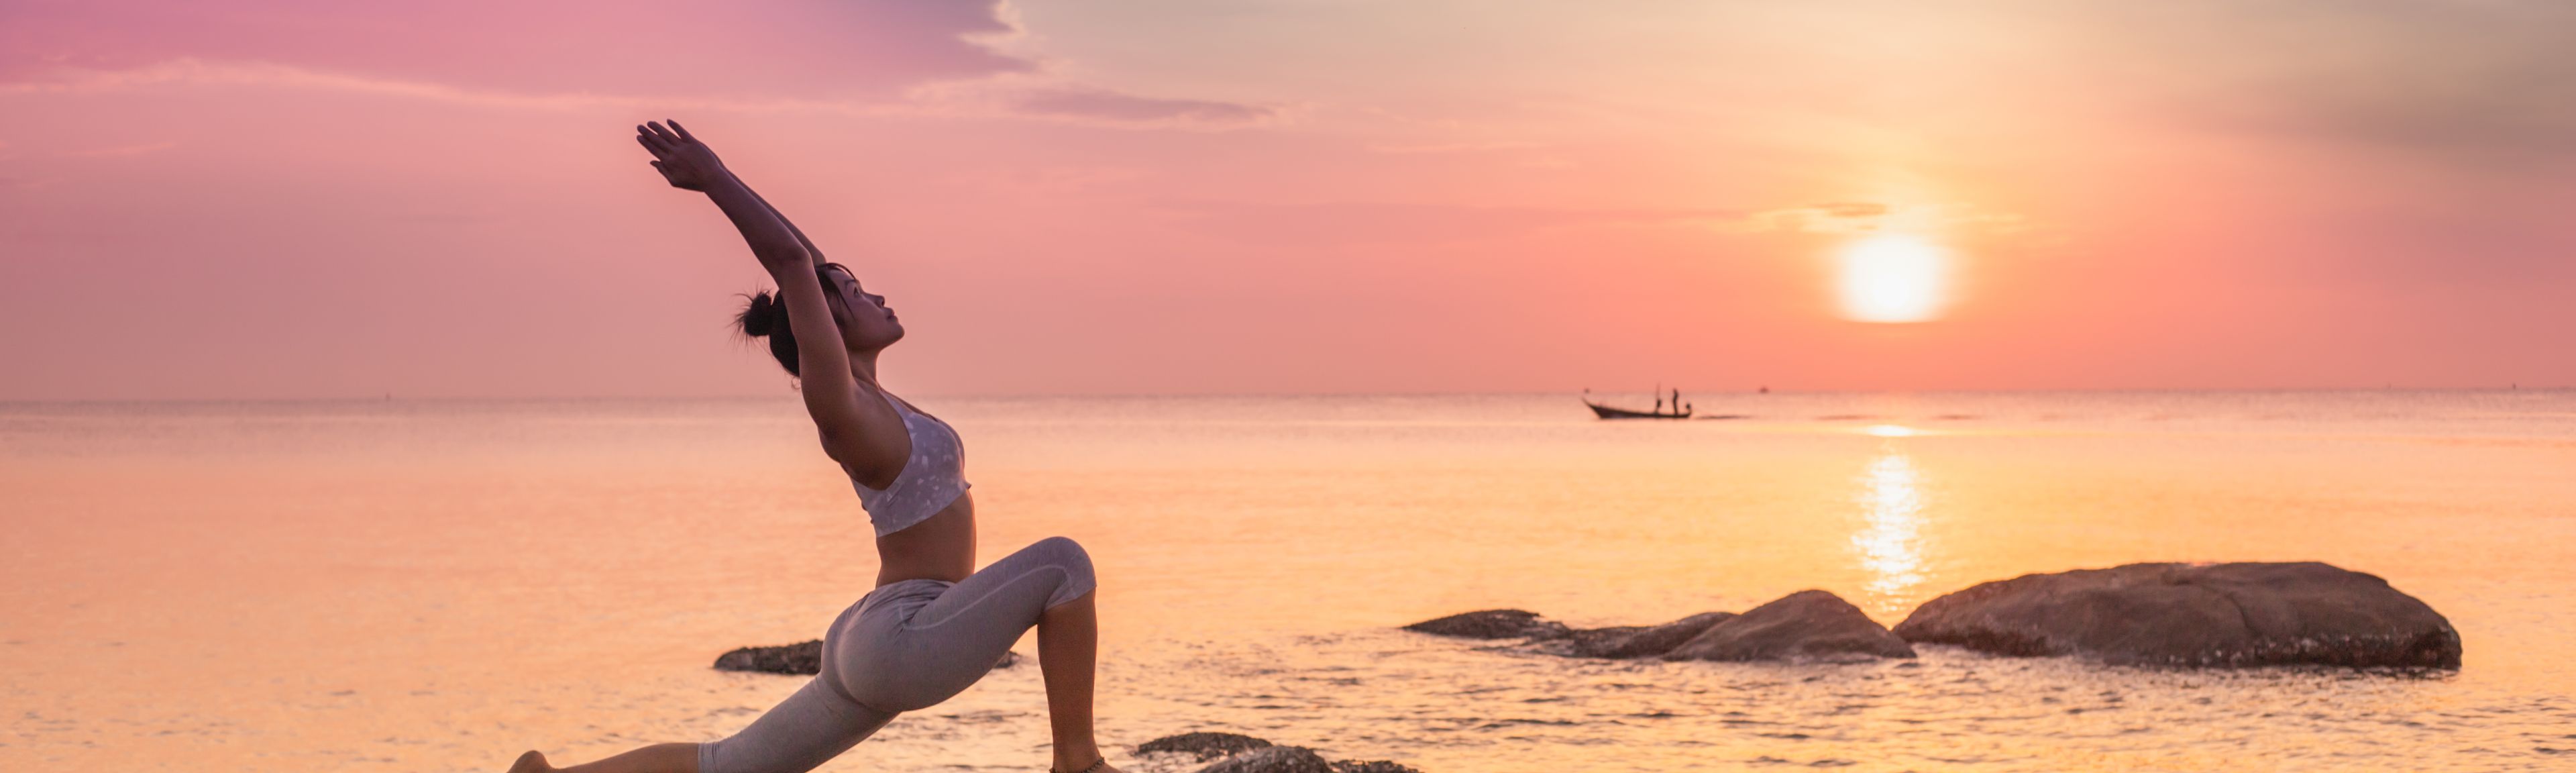 Frau in Yogastellung auf einem Felsen am Meer bei Sonnenuntergang